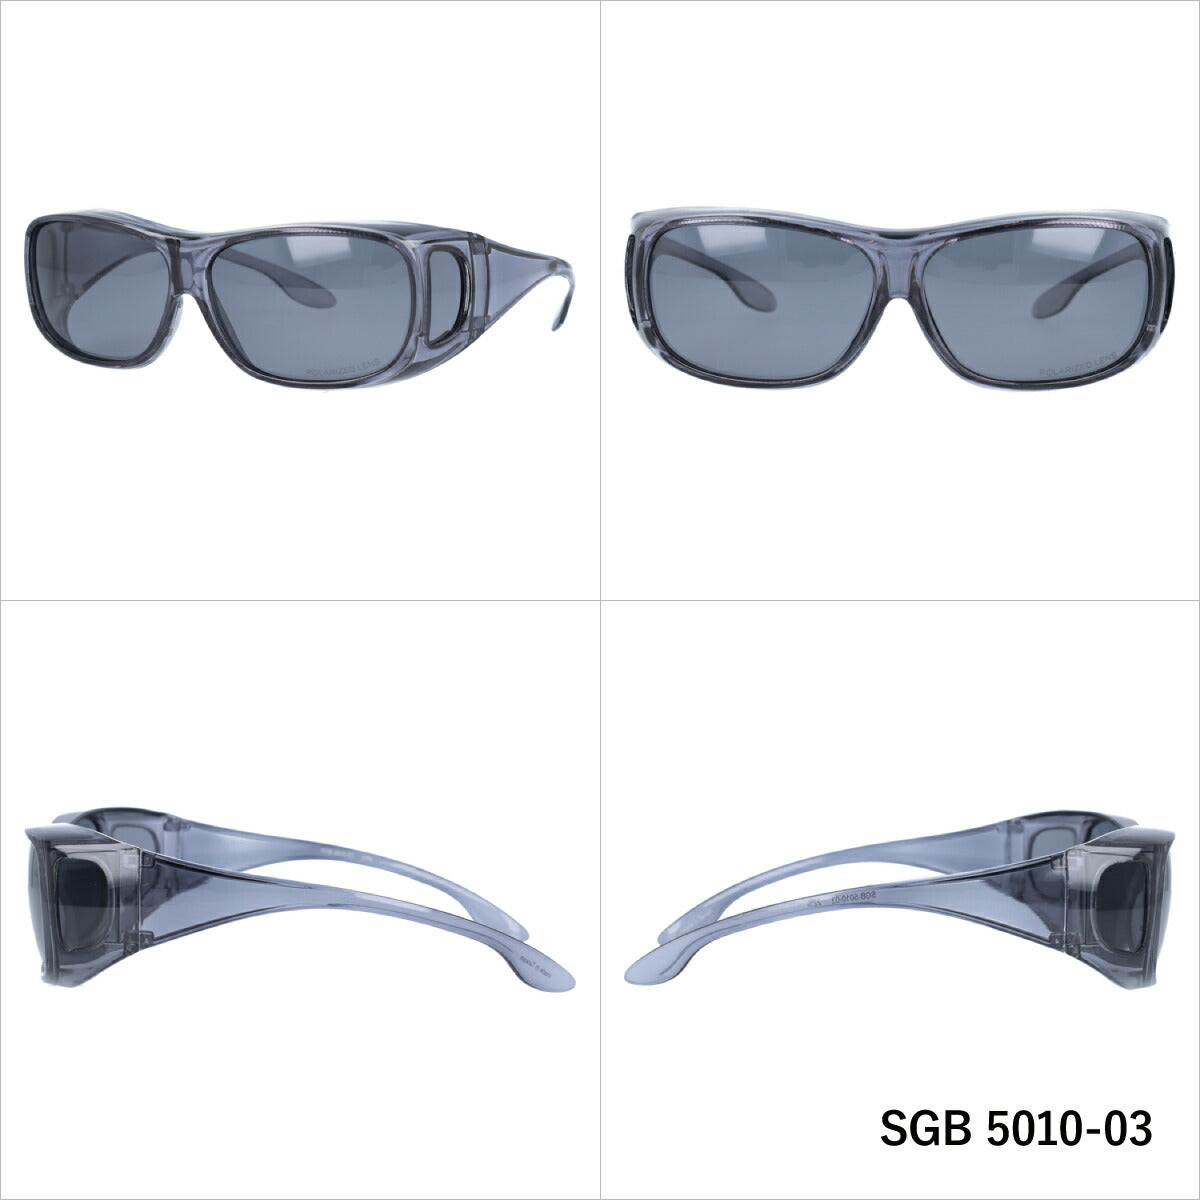 アークスタイル 偏光 サングラス ARC Style SGB 5010 全2カラー 62サイズ オーバーグラス 小顔向け メンズ レディース UVカット 紫外線 カラーサングラス ブランド 人気 定番 ユニセックス ラッピング無料